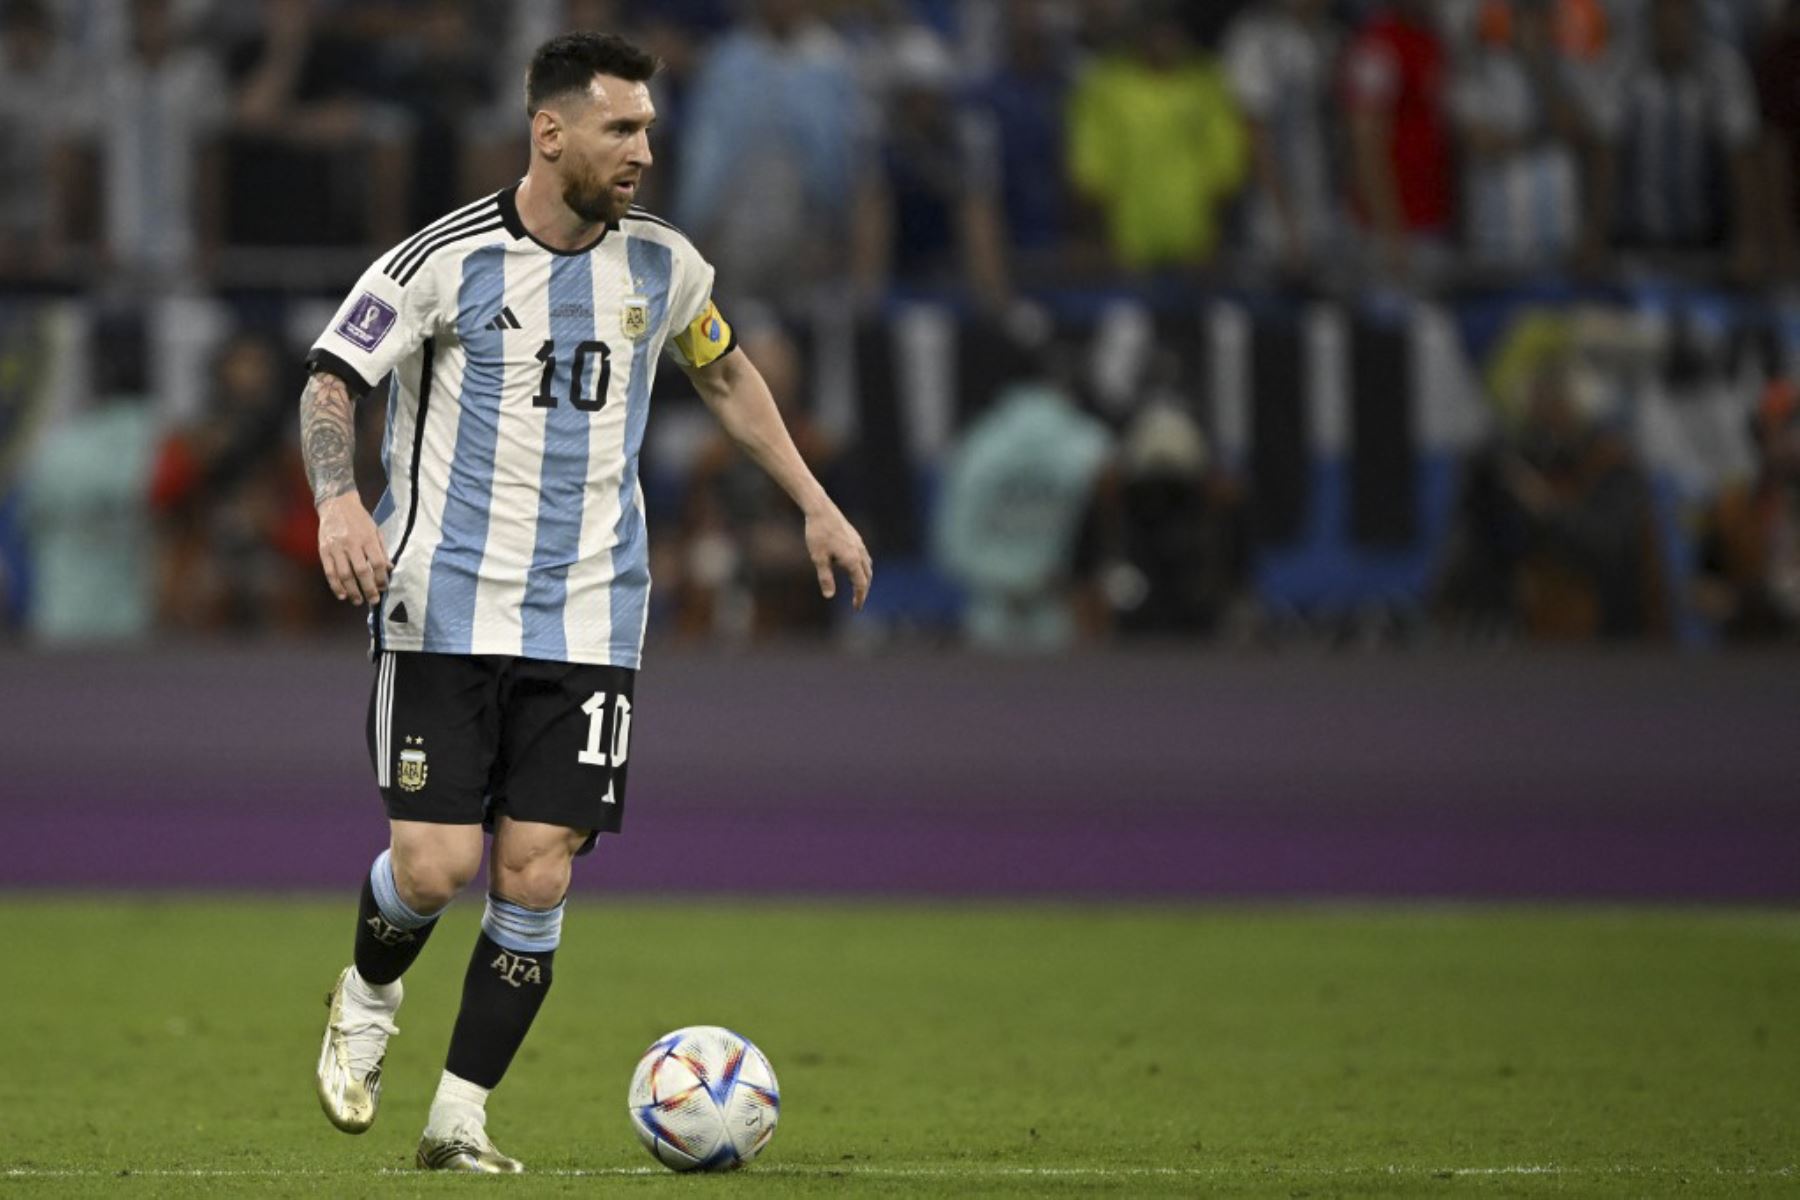 El delantero argentino #10 Lionel Messi controla el balón durante el partido de fútbol de octavos de final de la Copa Mundial Catar 2022 entre Argentina y Australia en el estadio Ahmad Bin Ali en Al-Rayyan, al oeste de Doha

Foto: AFP